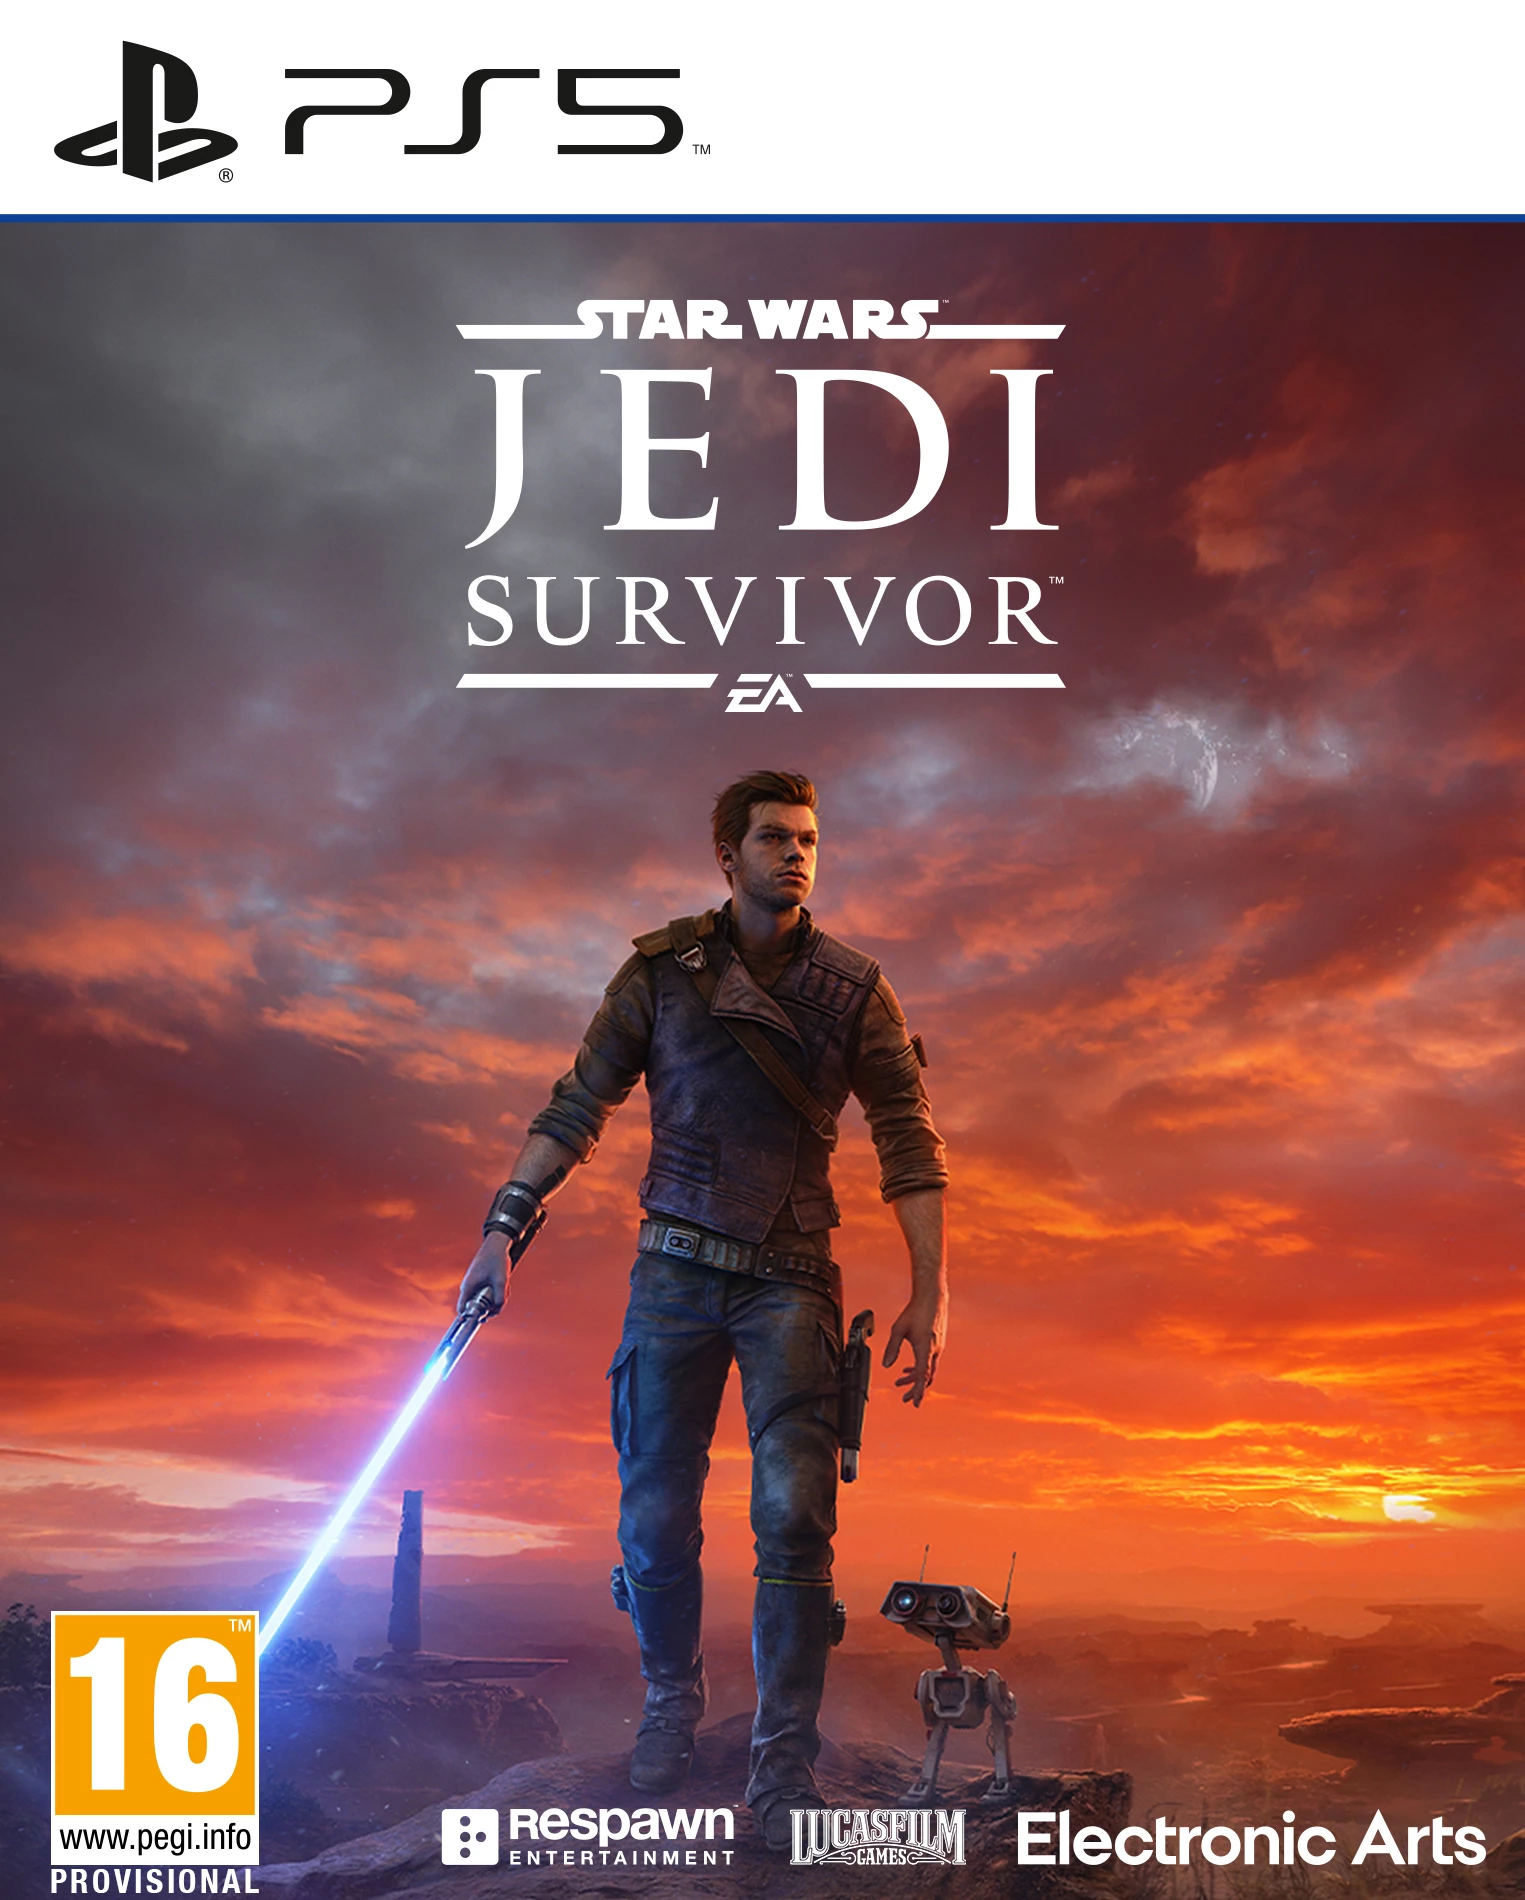 Star Wars Jedi: Survivor (PS5), Respawn Entertainment